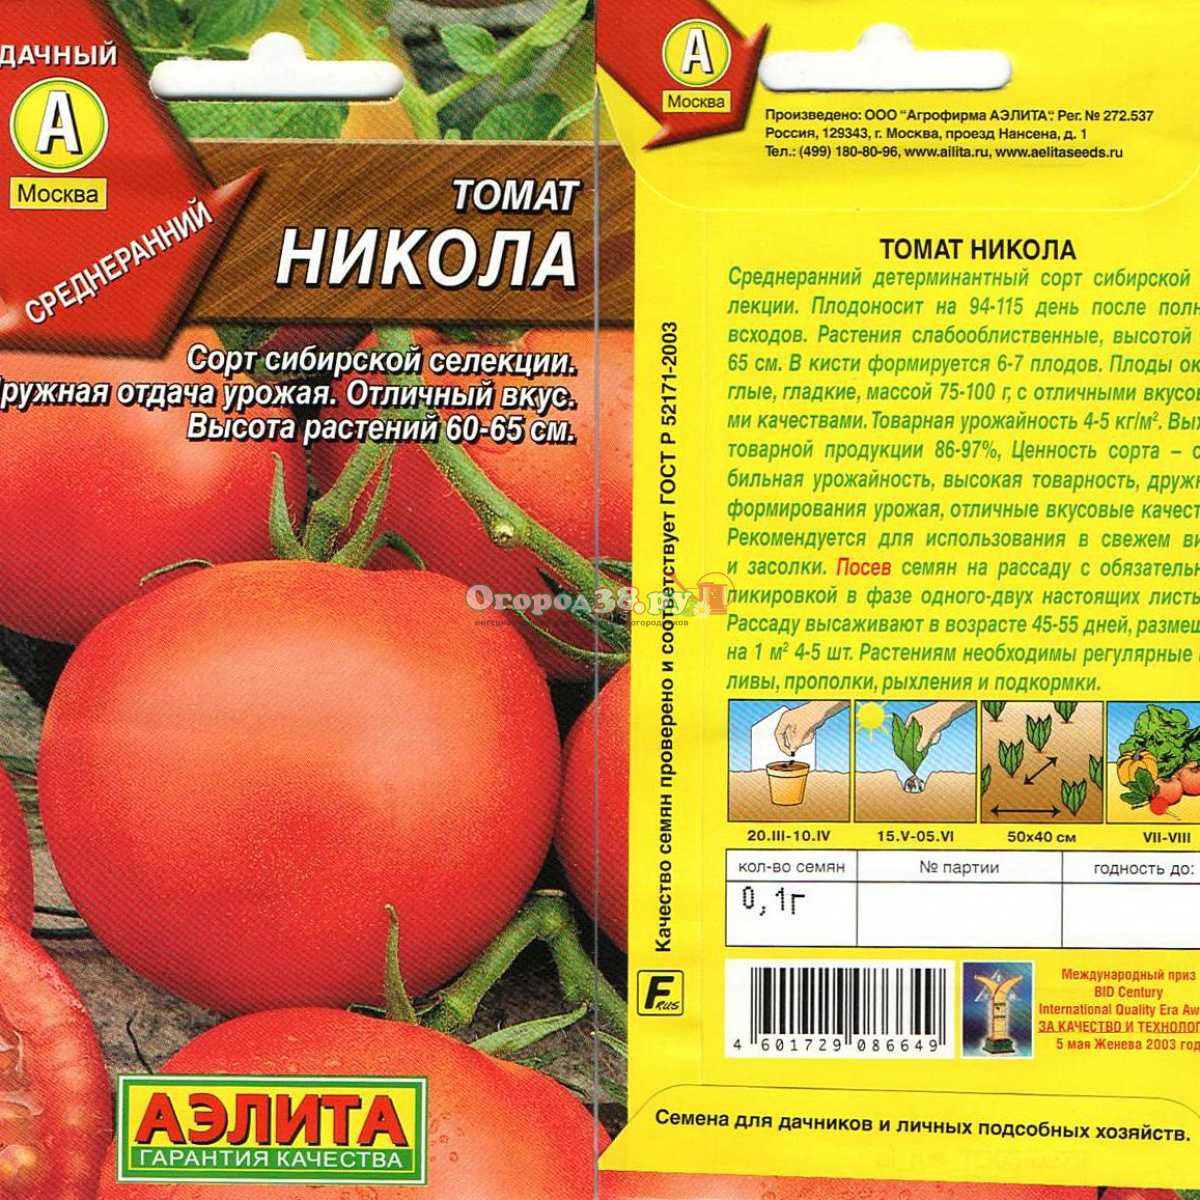 Томат леопольд f1: характеристика и описание сорта с фото, урожайность помидора гавриш ф1, отзывы тех, кто сажал | сортовед